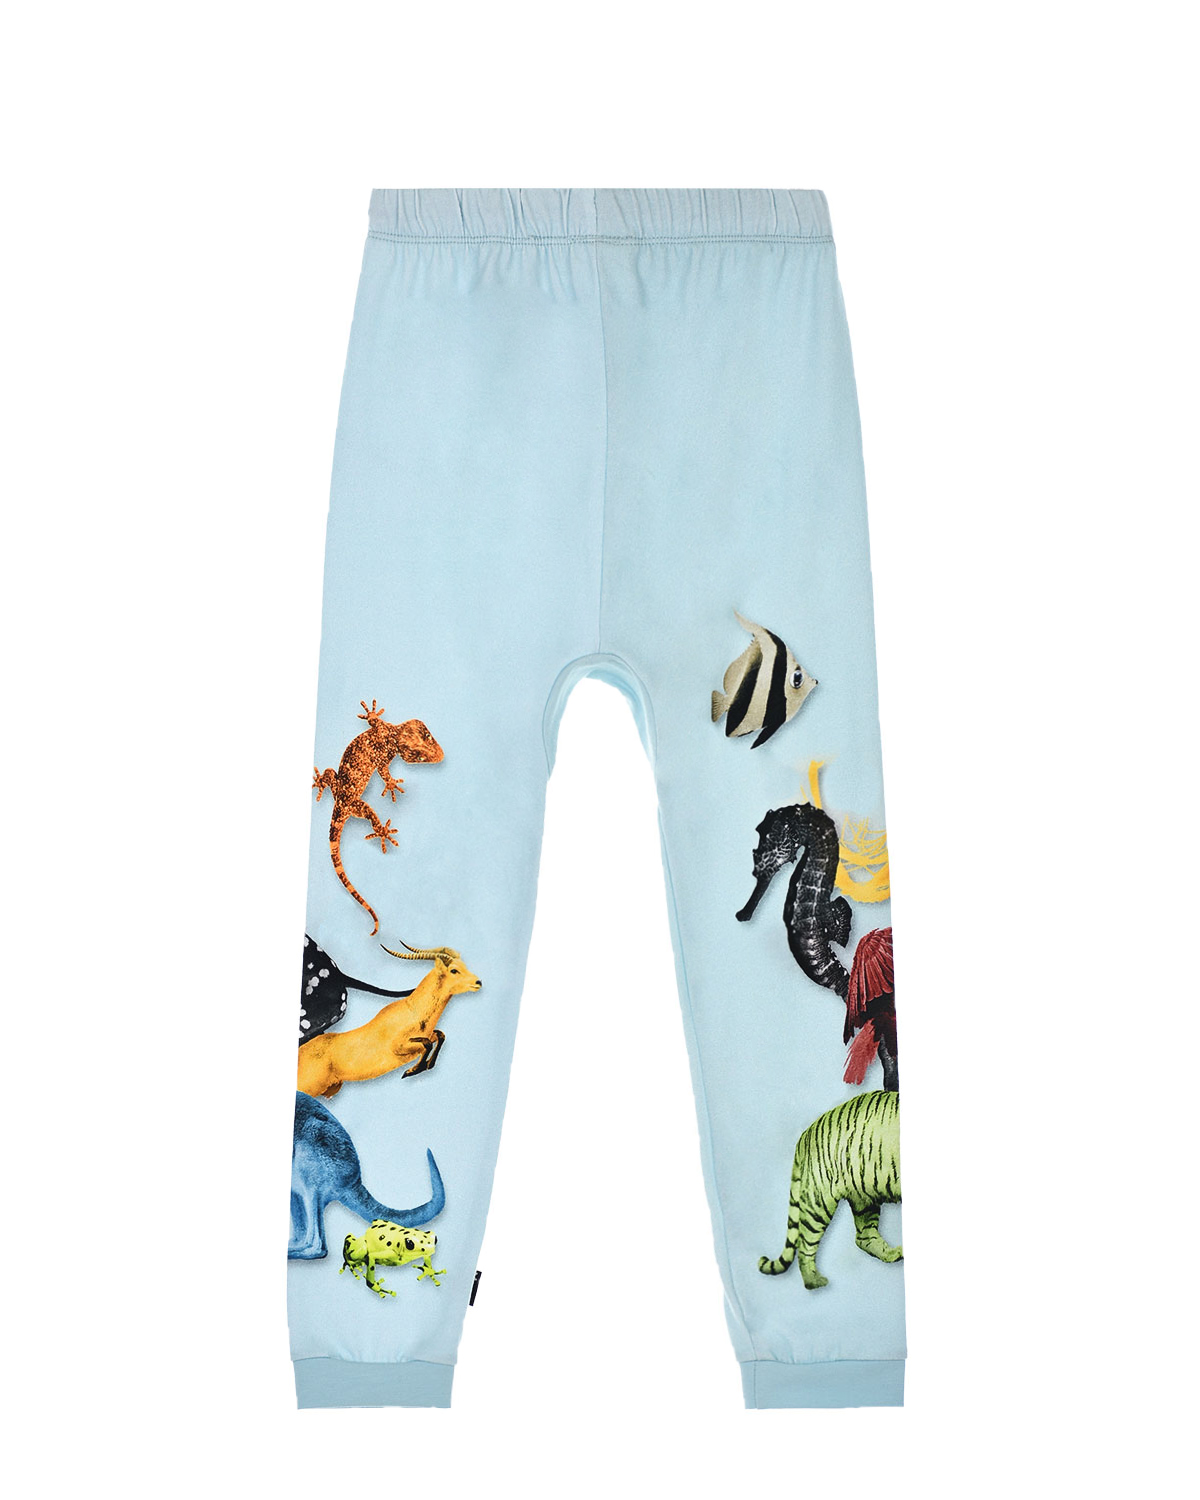 Голубые спортивные брюки с принтом Molo детские, размер 80, цвет голубой - фото 2